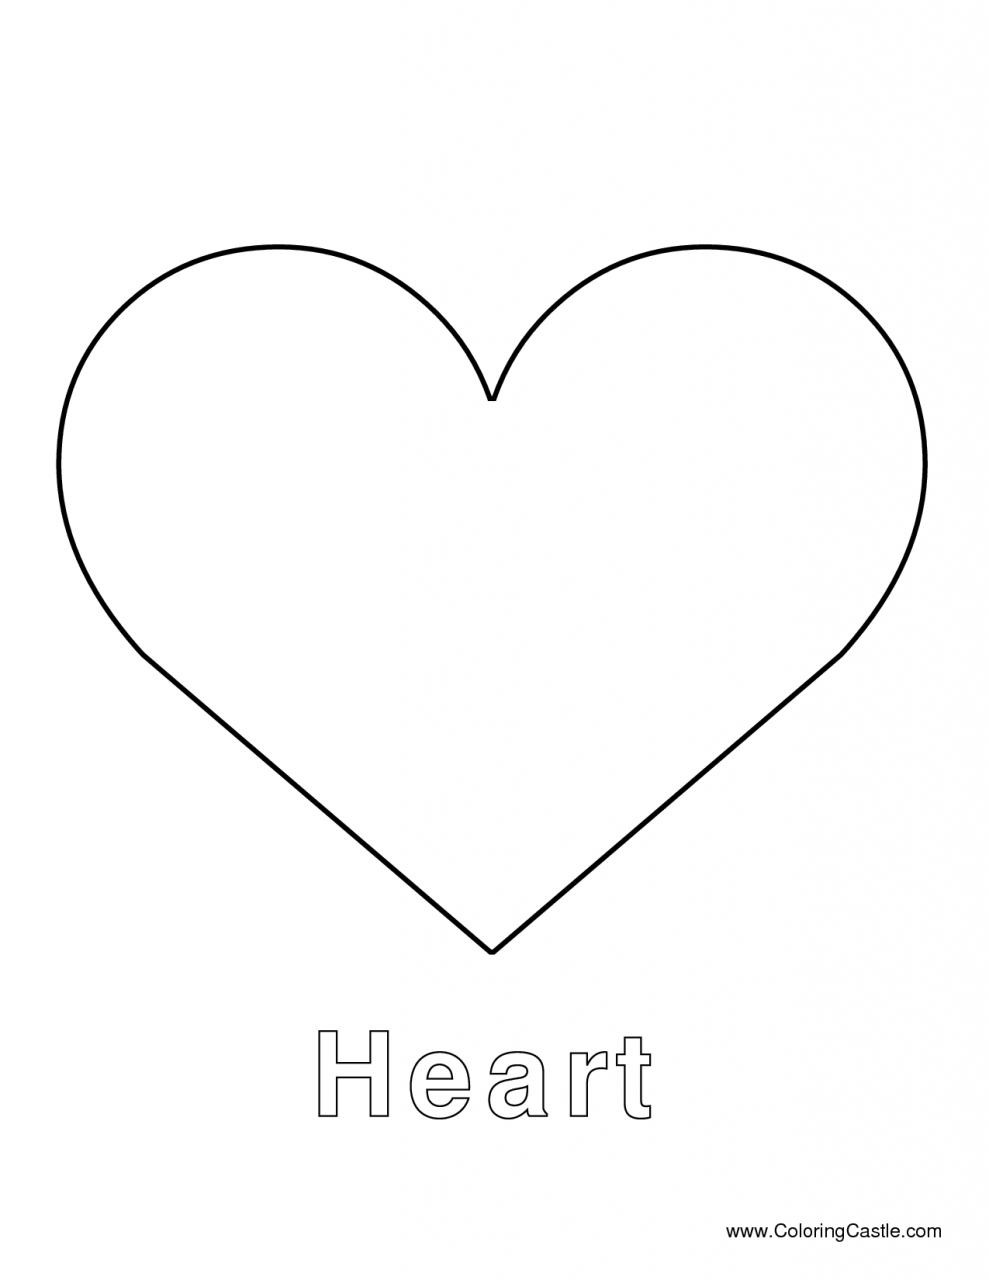 50 buc tranh to mau hinh trai tim dep nhat danh tang cho be 4 - 50+ bức tranh tô màu hình trái tim đẹp nhất dành tặng cho bé